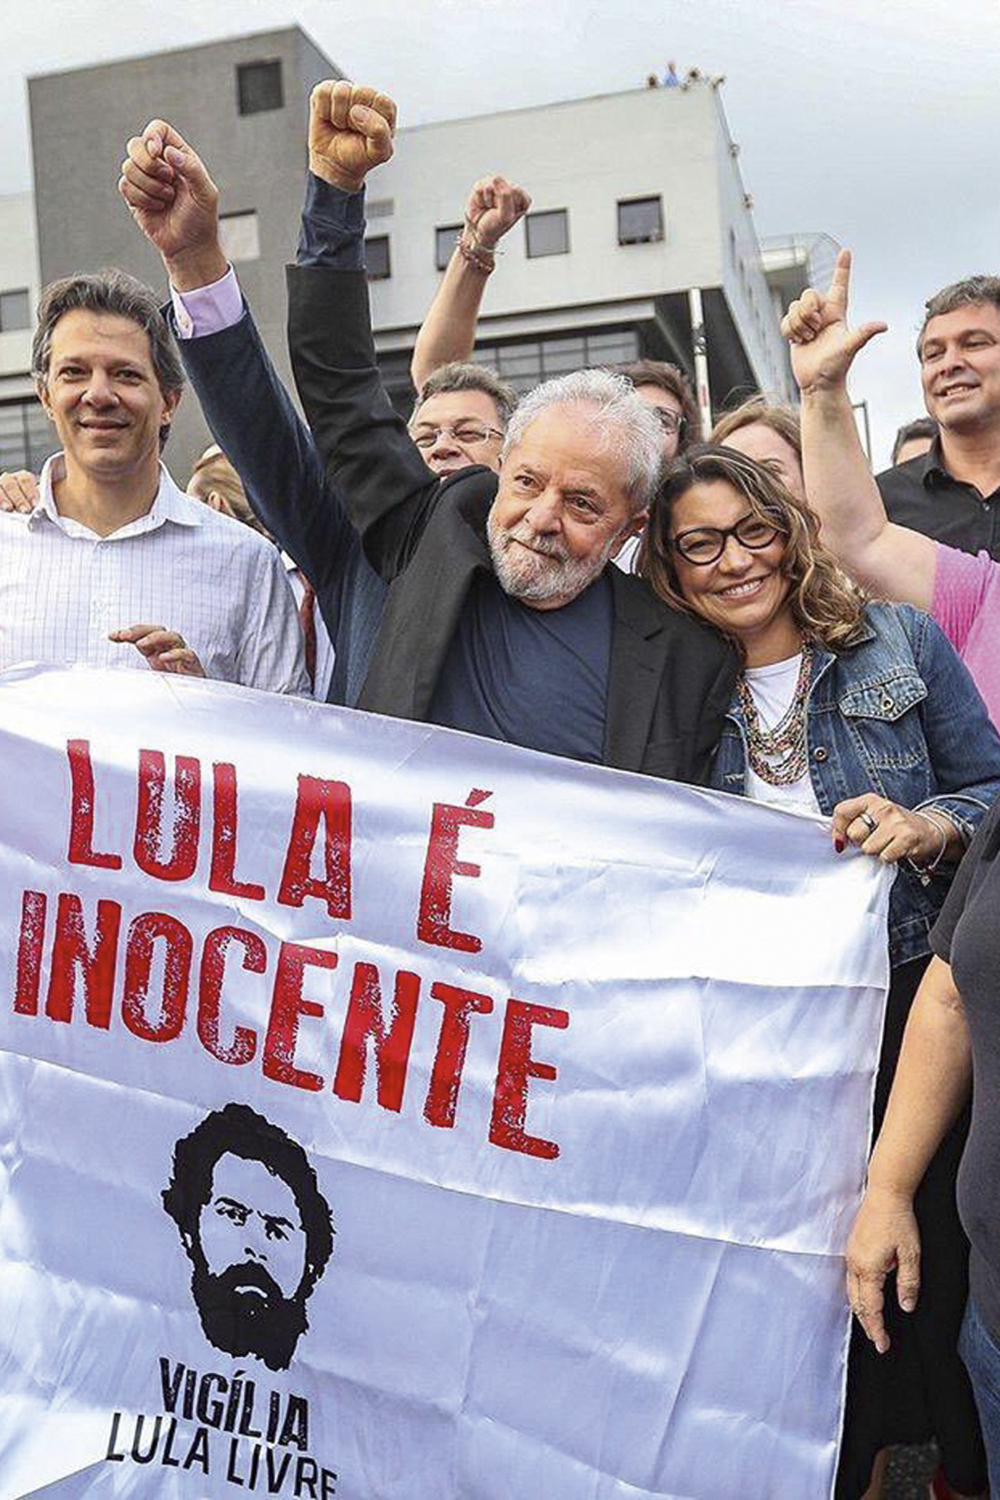 PRIMEIRA APARIÇÃO - Com Lula na PF: Janja celebra a soltura do petista após 580 dias no cárcere, onde começou o namoro -